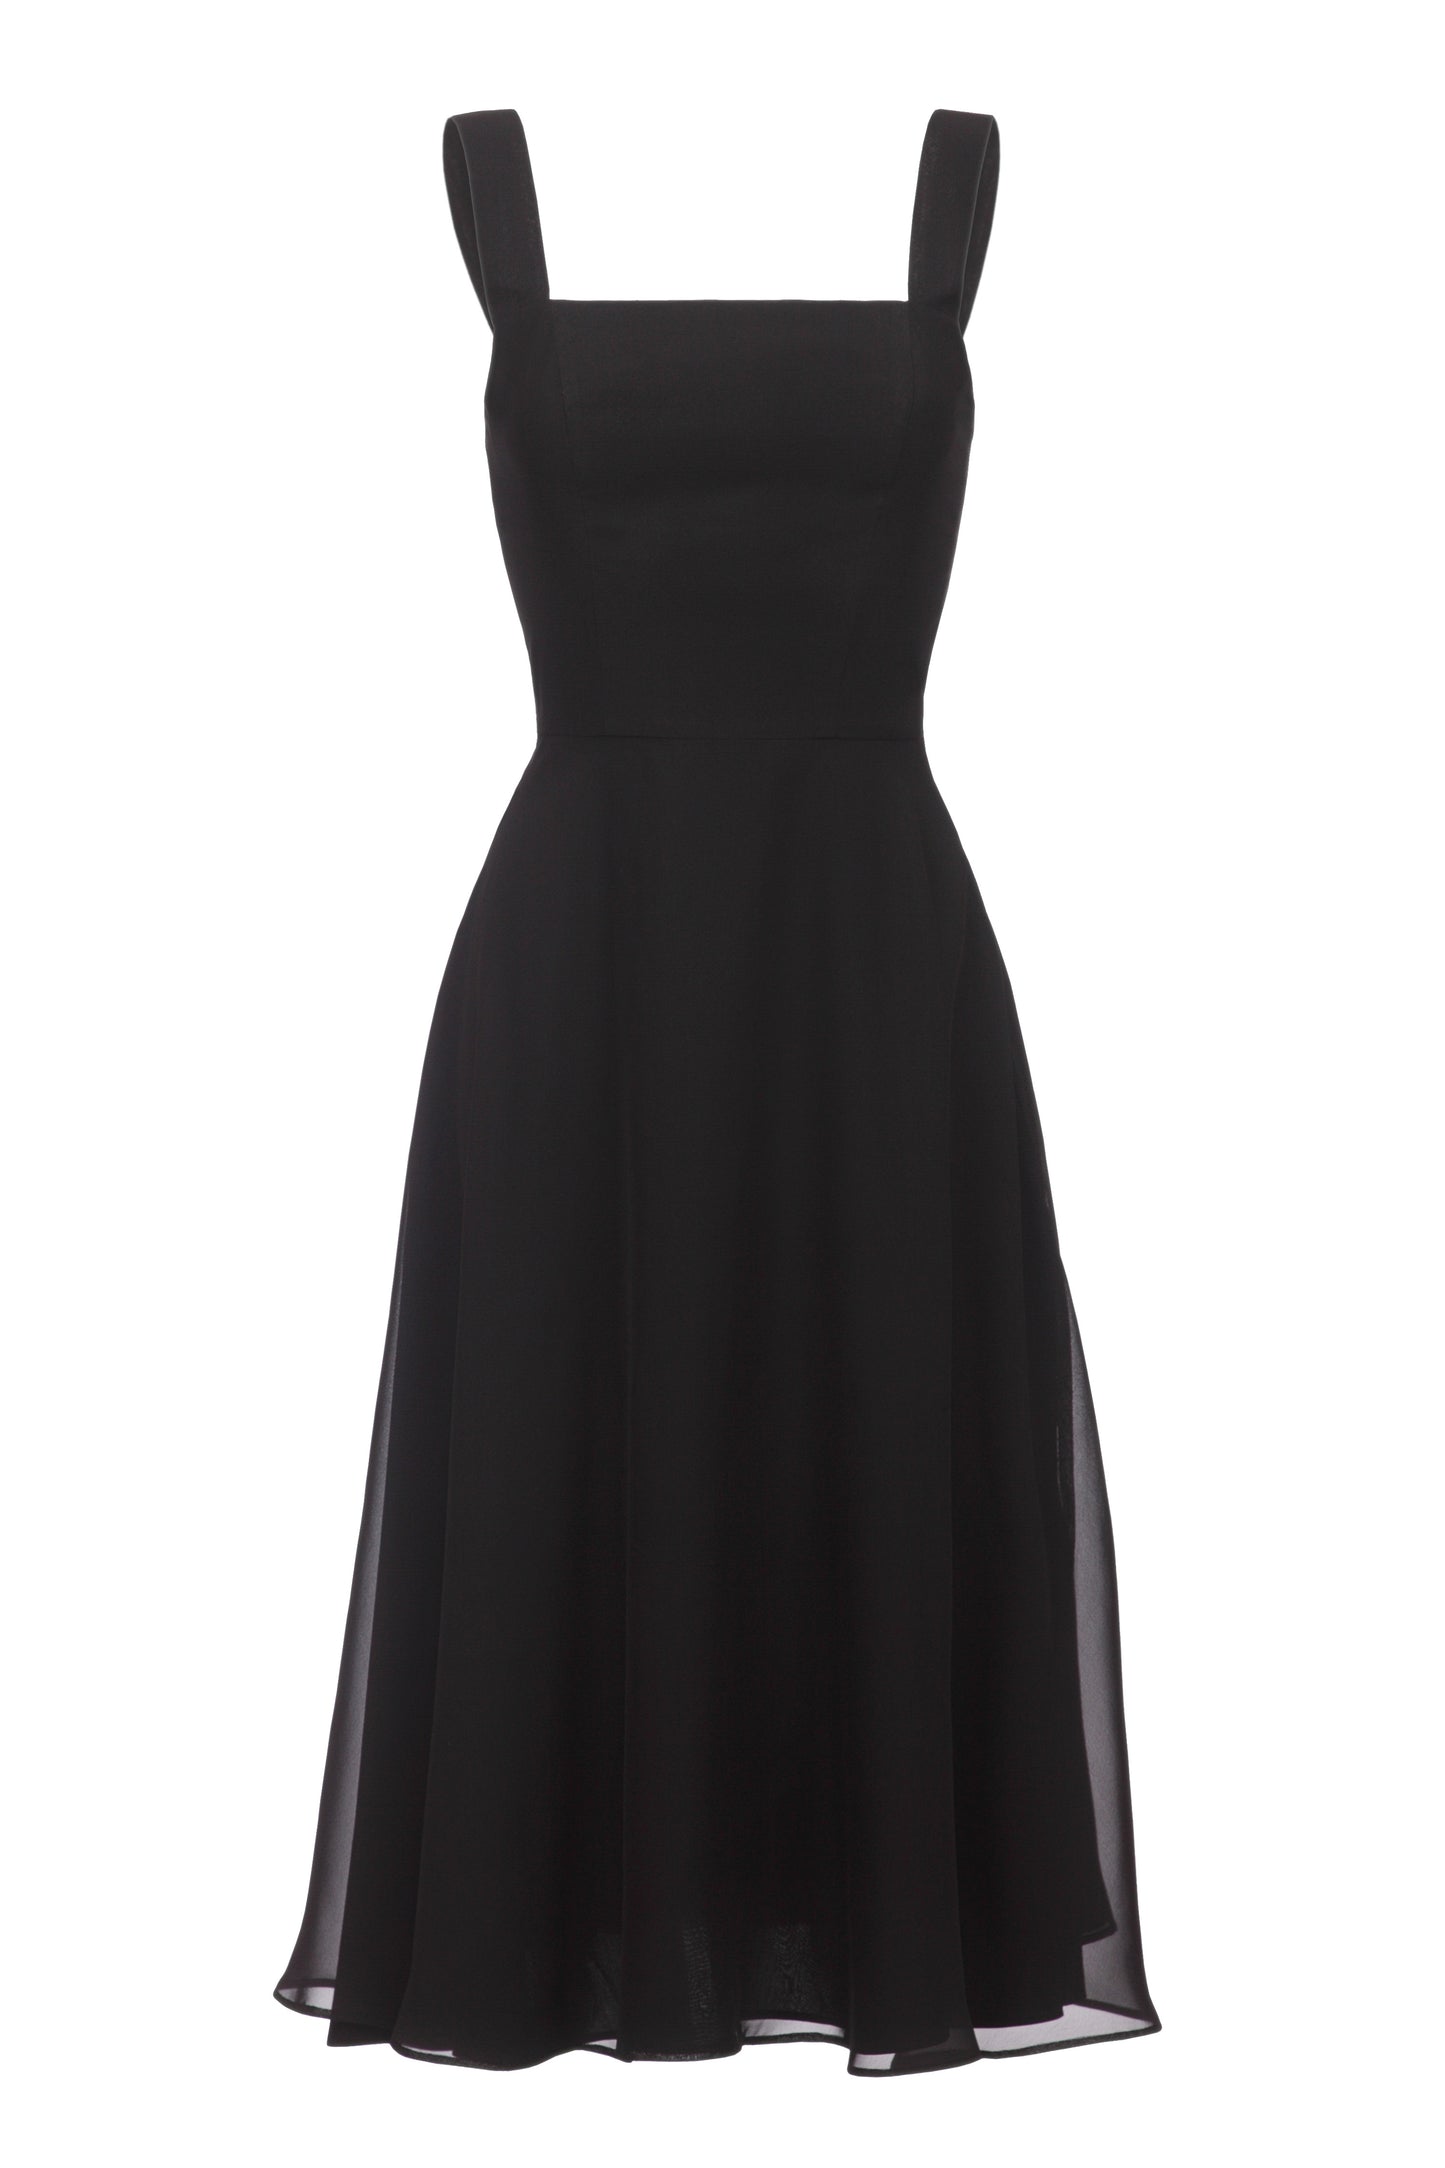 Full skirt midi dress/ Black